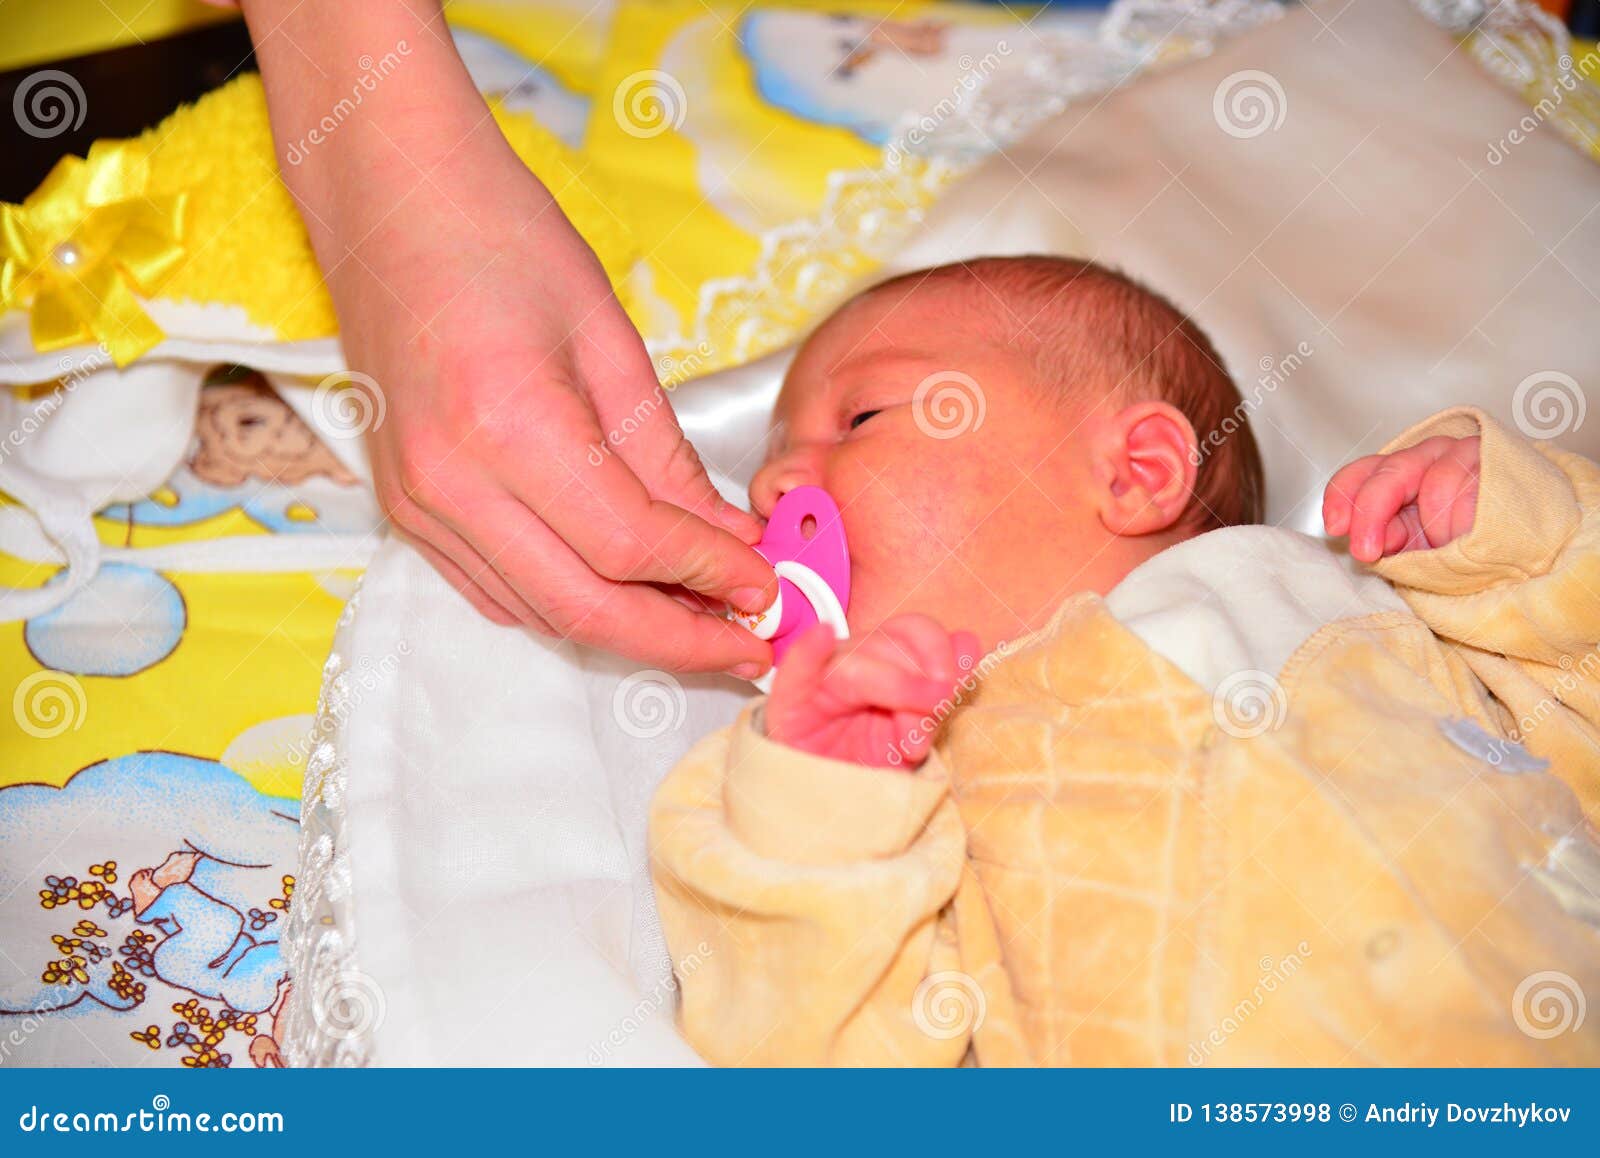 giving a newborn a pacifier